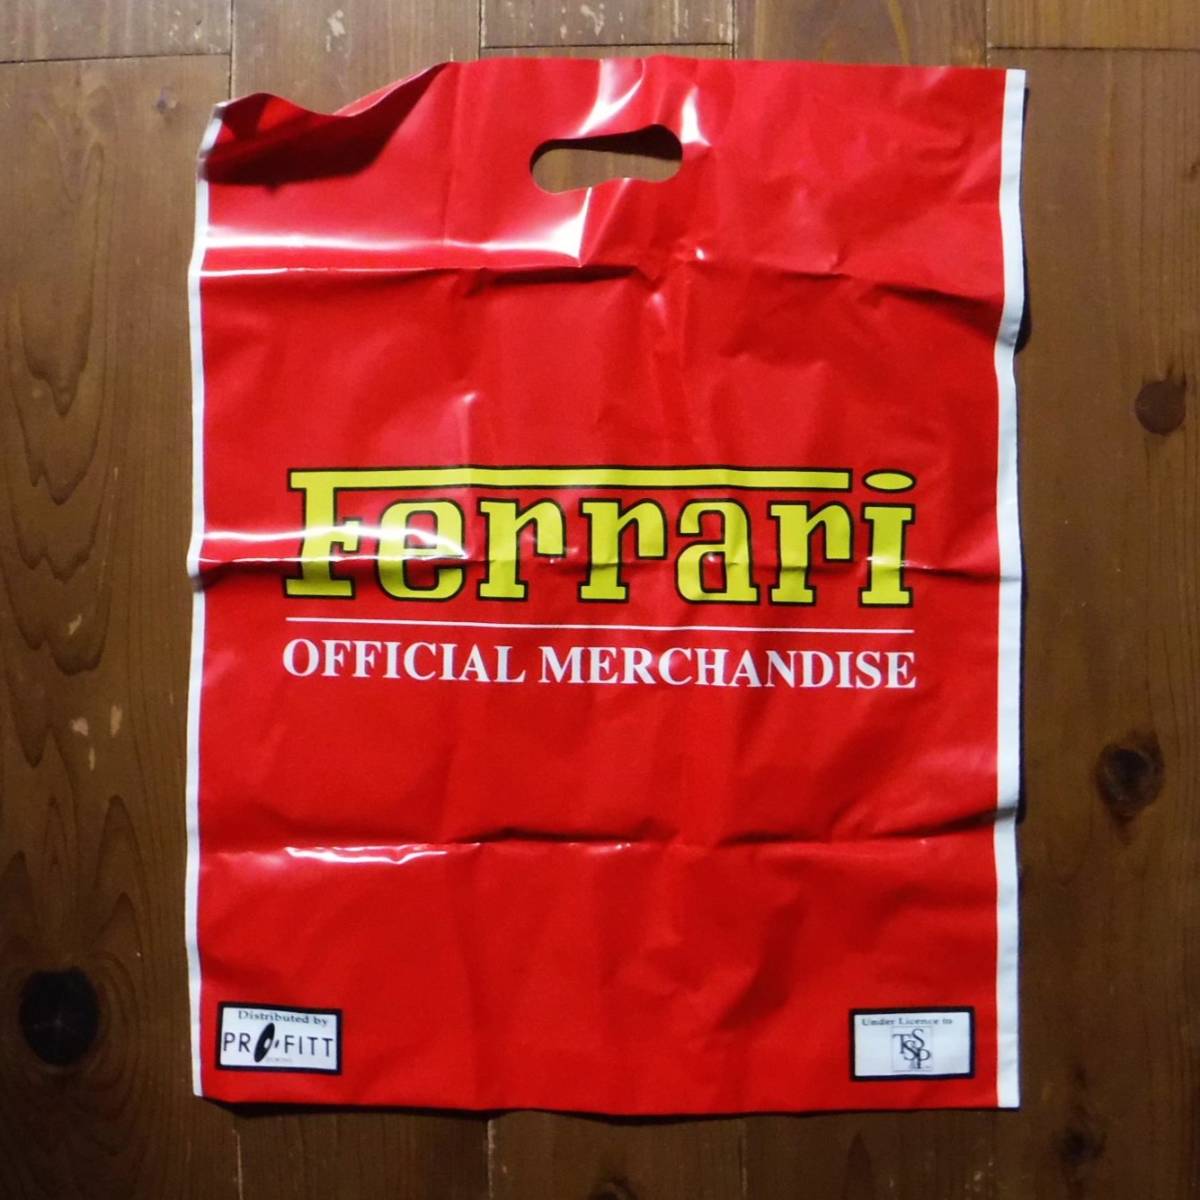 【Maisto】Ferrari 348ts 組み立てキットSET［0554］